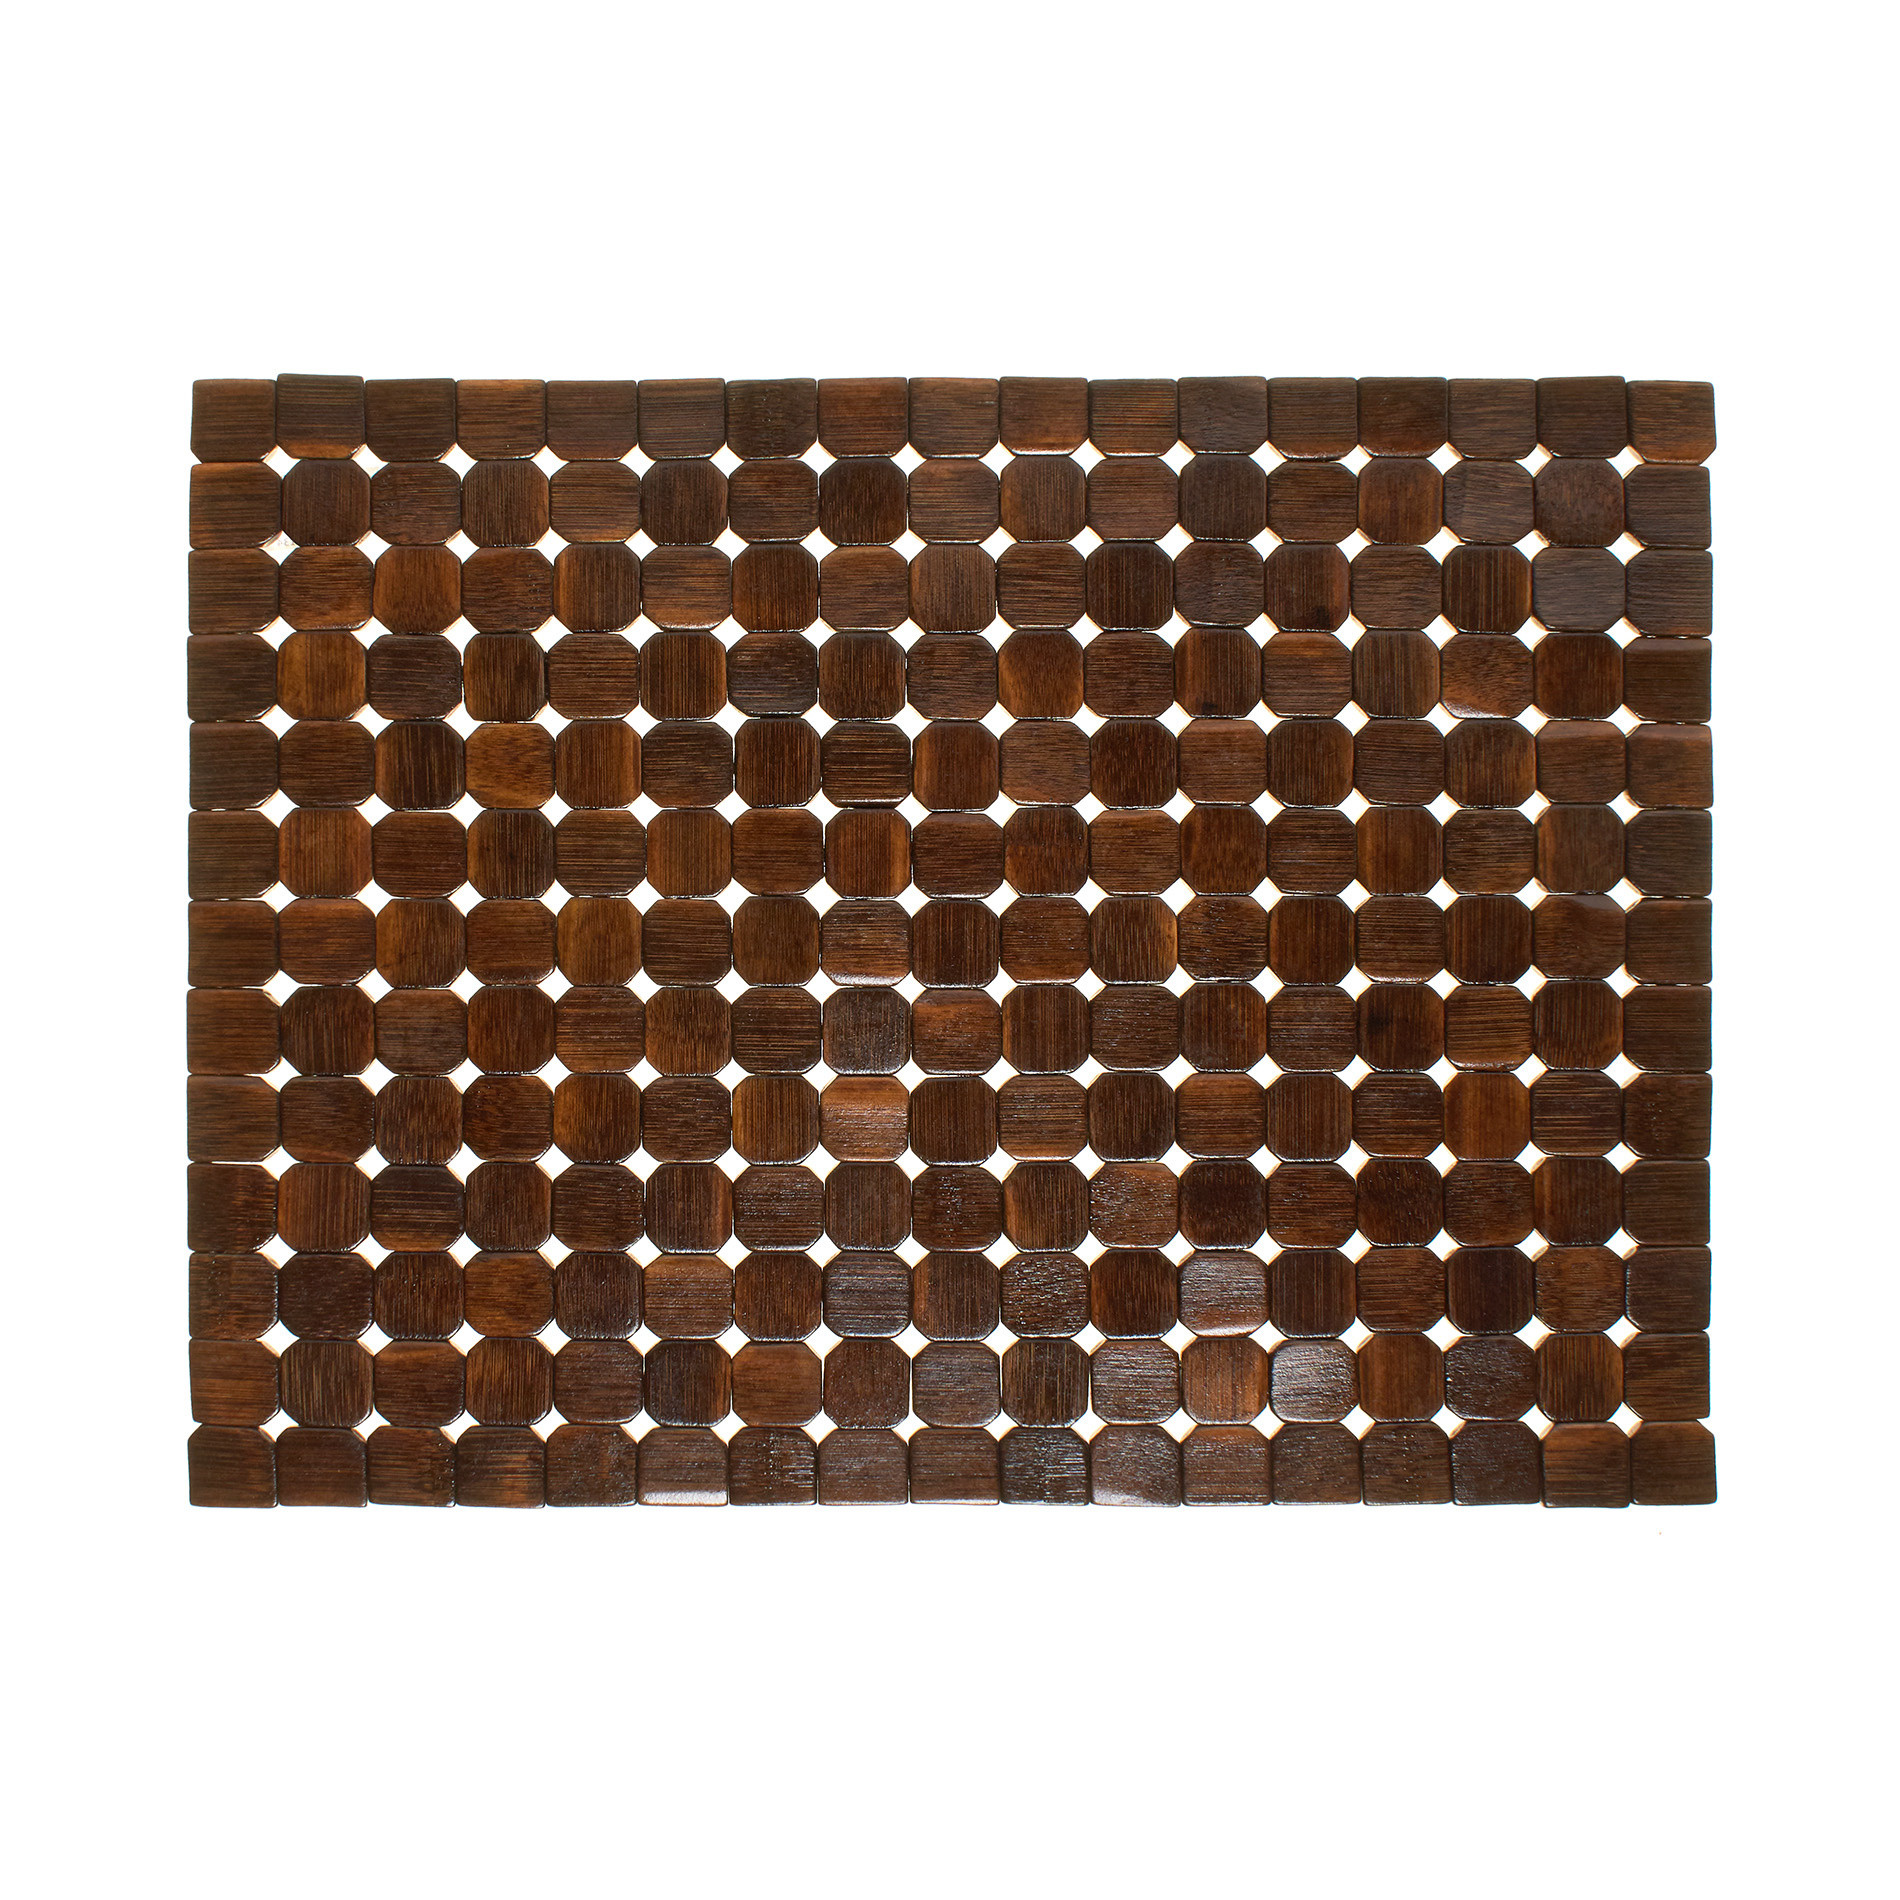 Расписной бамбуковый коврик для столовых приборов Coincasa, темно-коричневый подставка для столовых приборов универсальная цвет микс